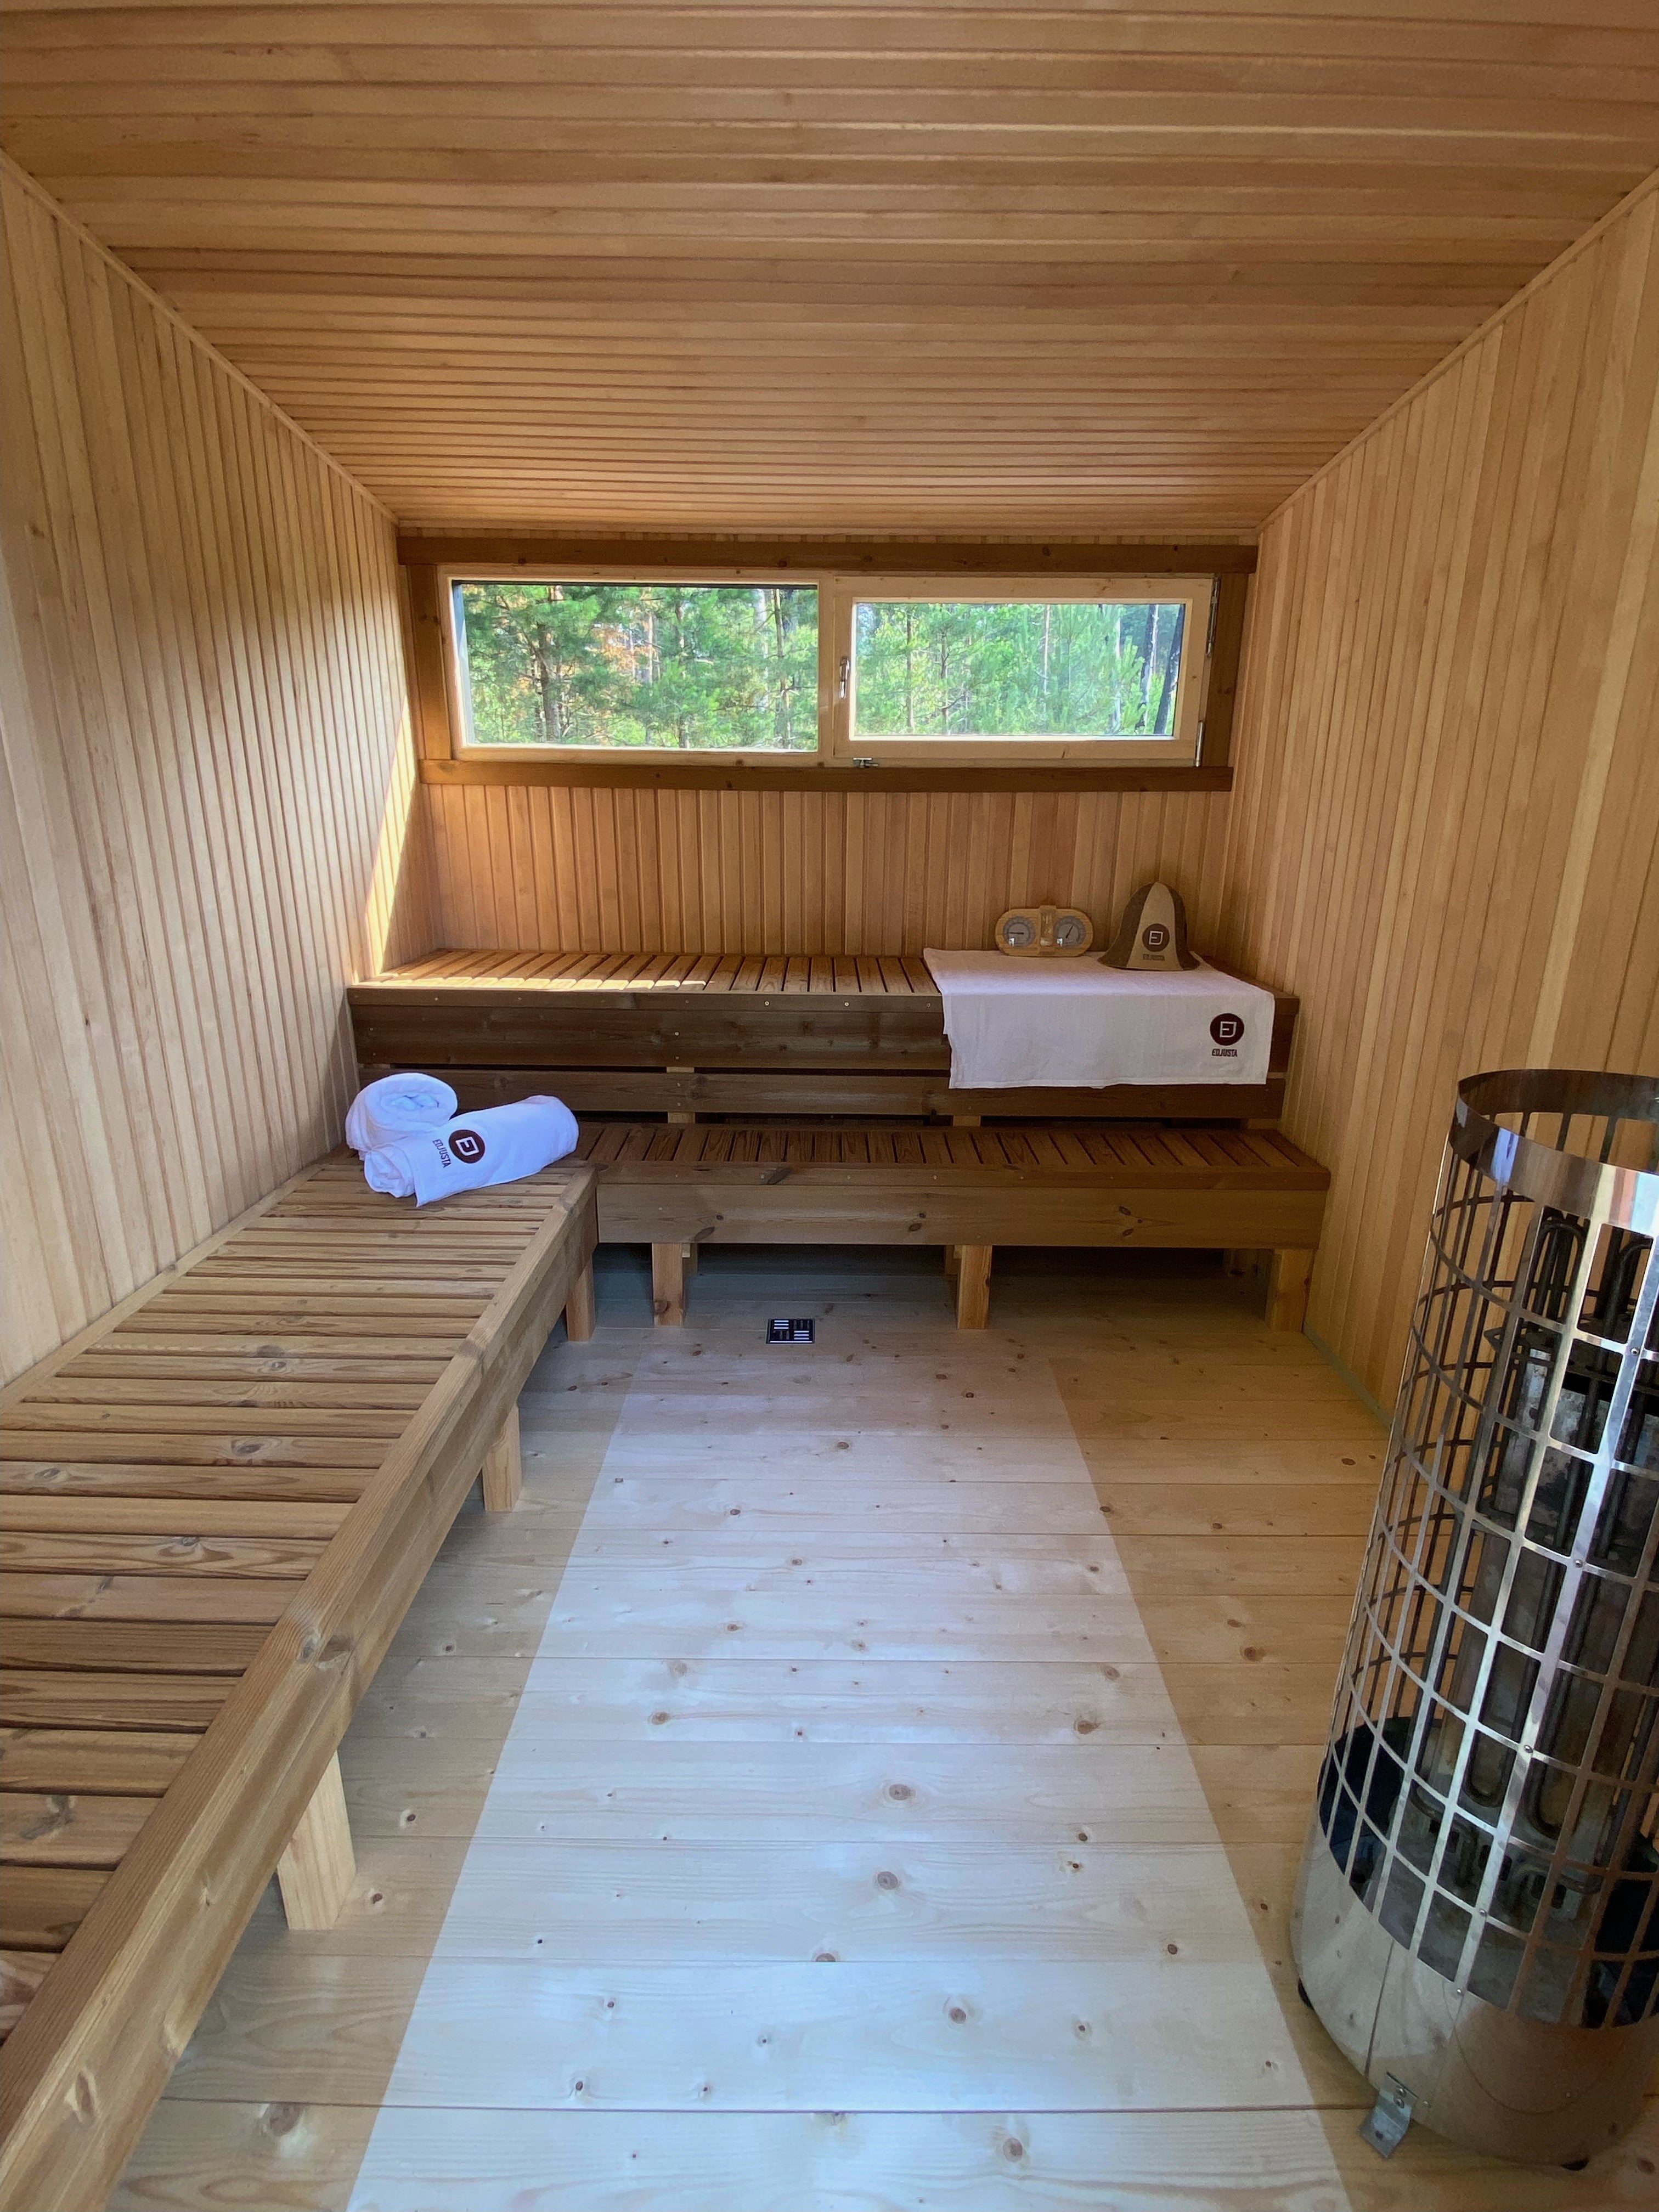 Halo Saunas Z1 Traditional Timber Frame Sauna 3.5m x 2.45m